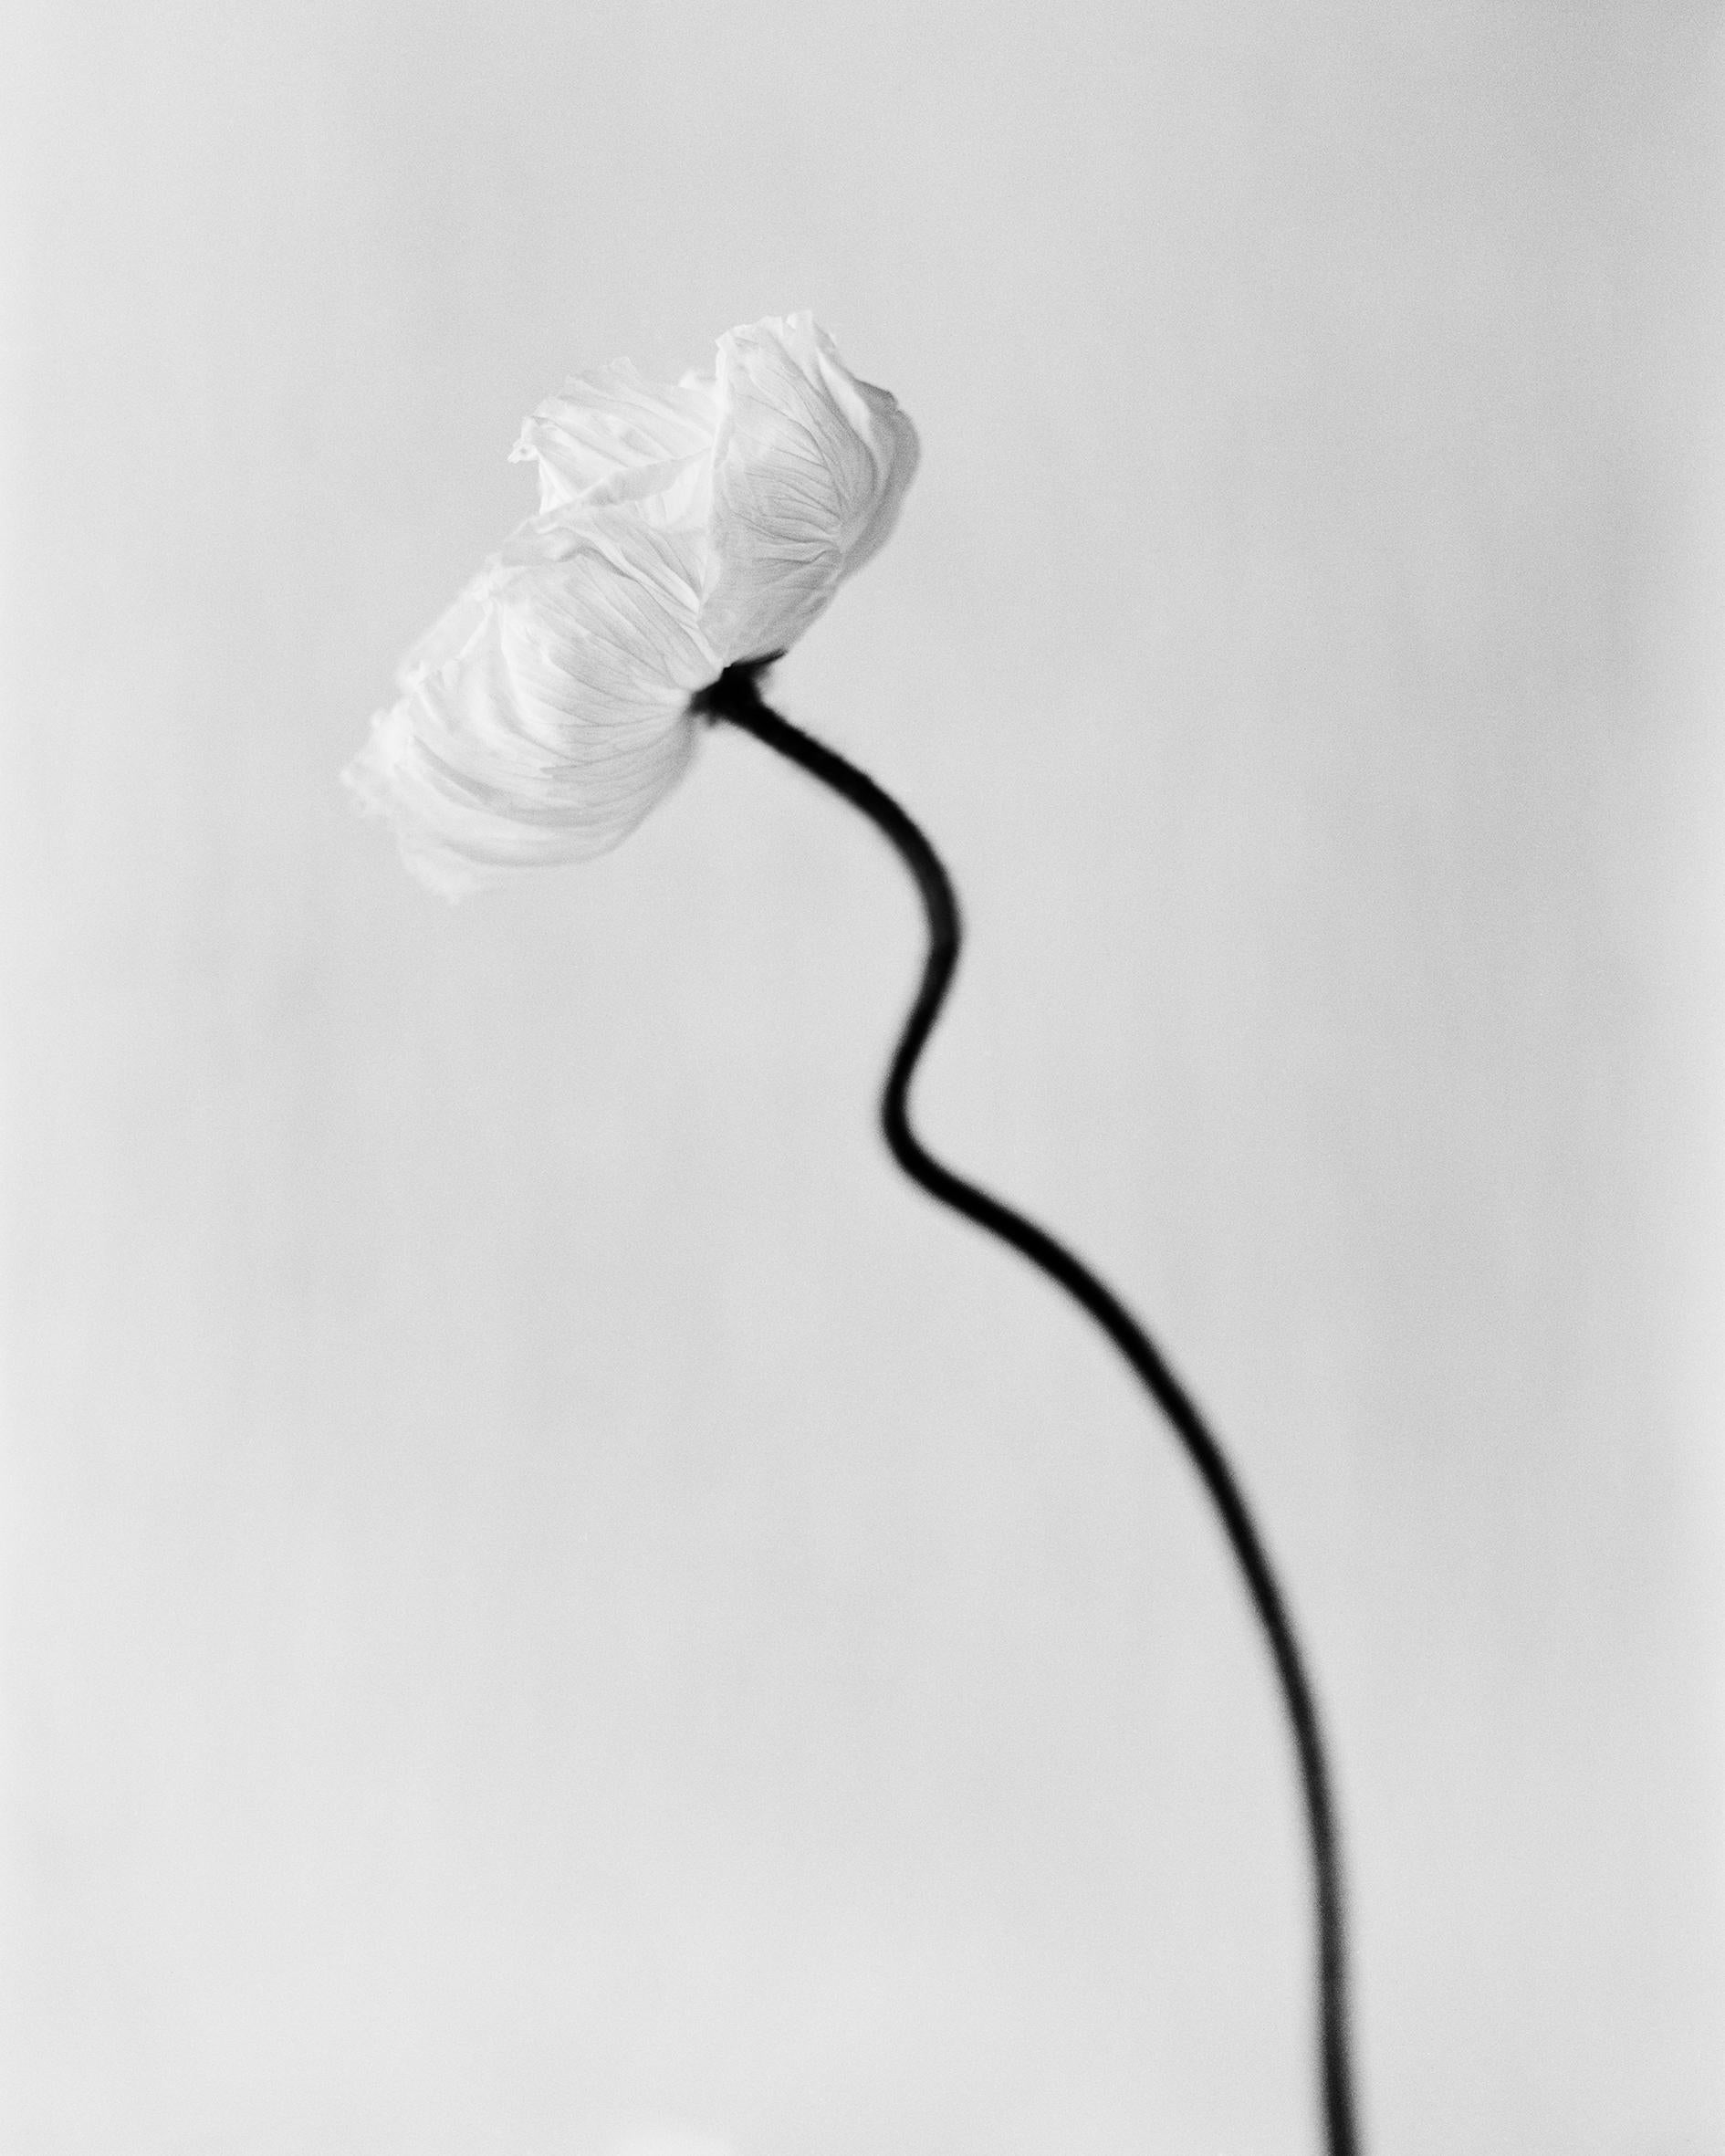 Ugne Pouwell Still-Life Photograph – ppy bloom – Schwarz-Weiß- analoge Blumenfotografie in Schwarz-Weiß, limitierte Auflage von 20 Stück